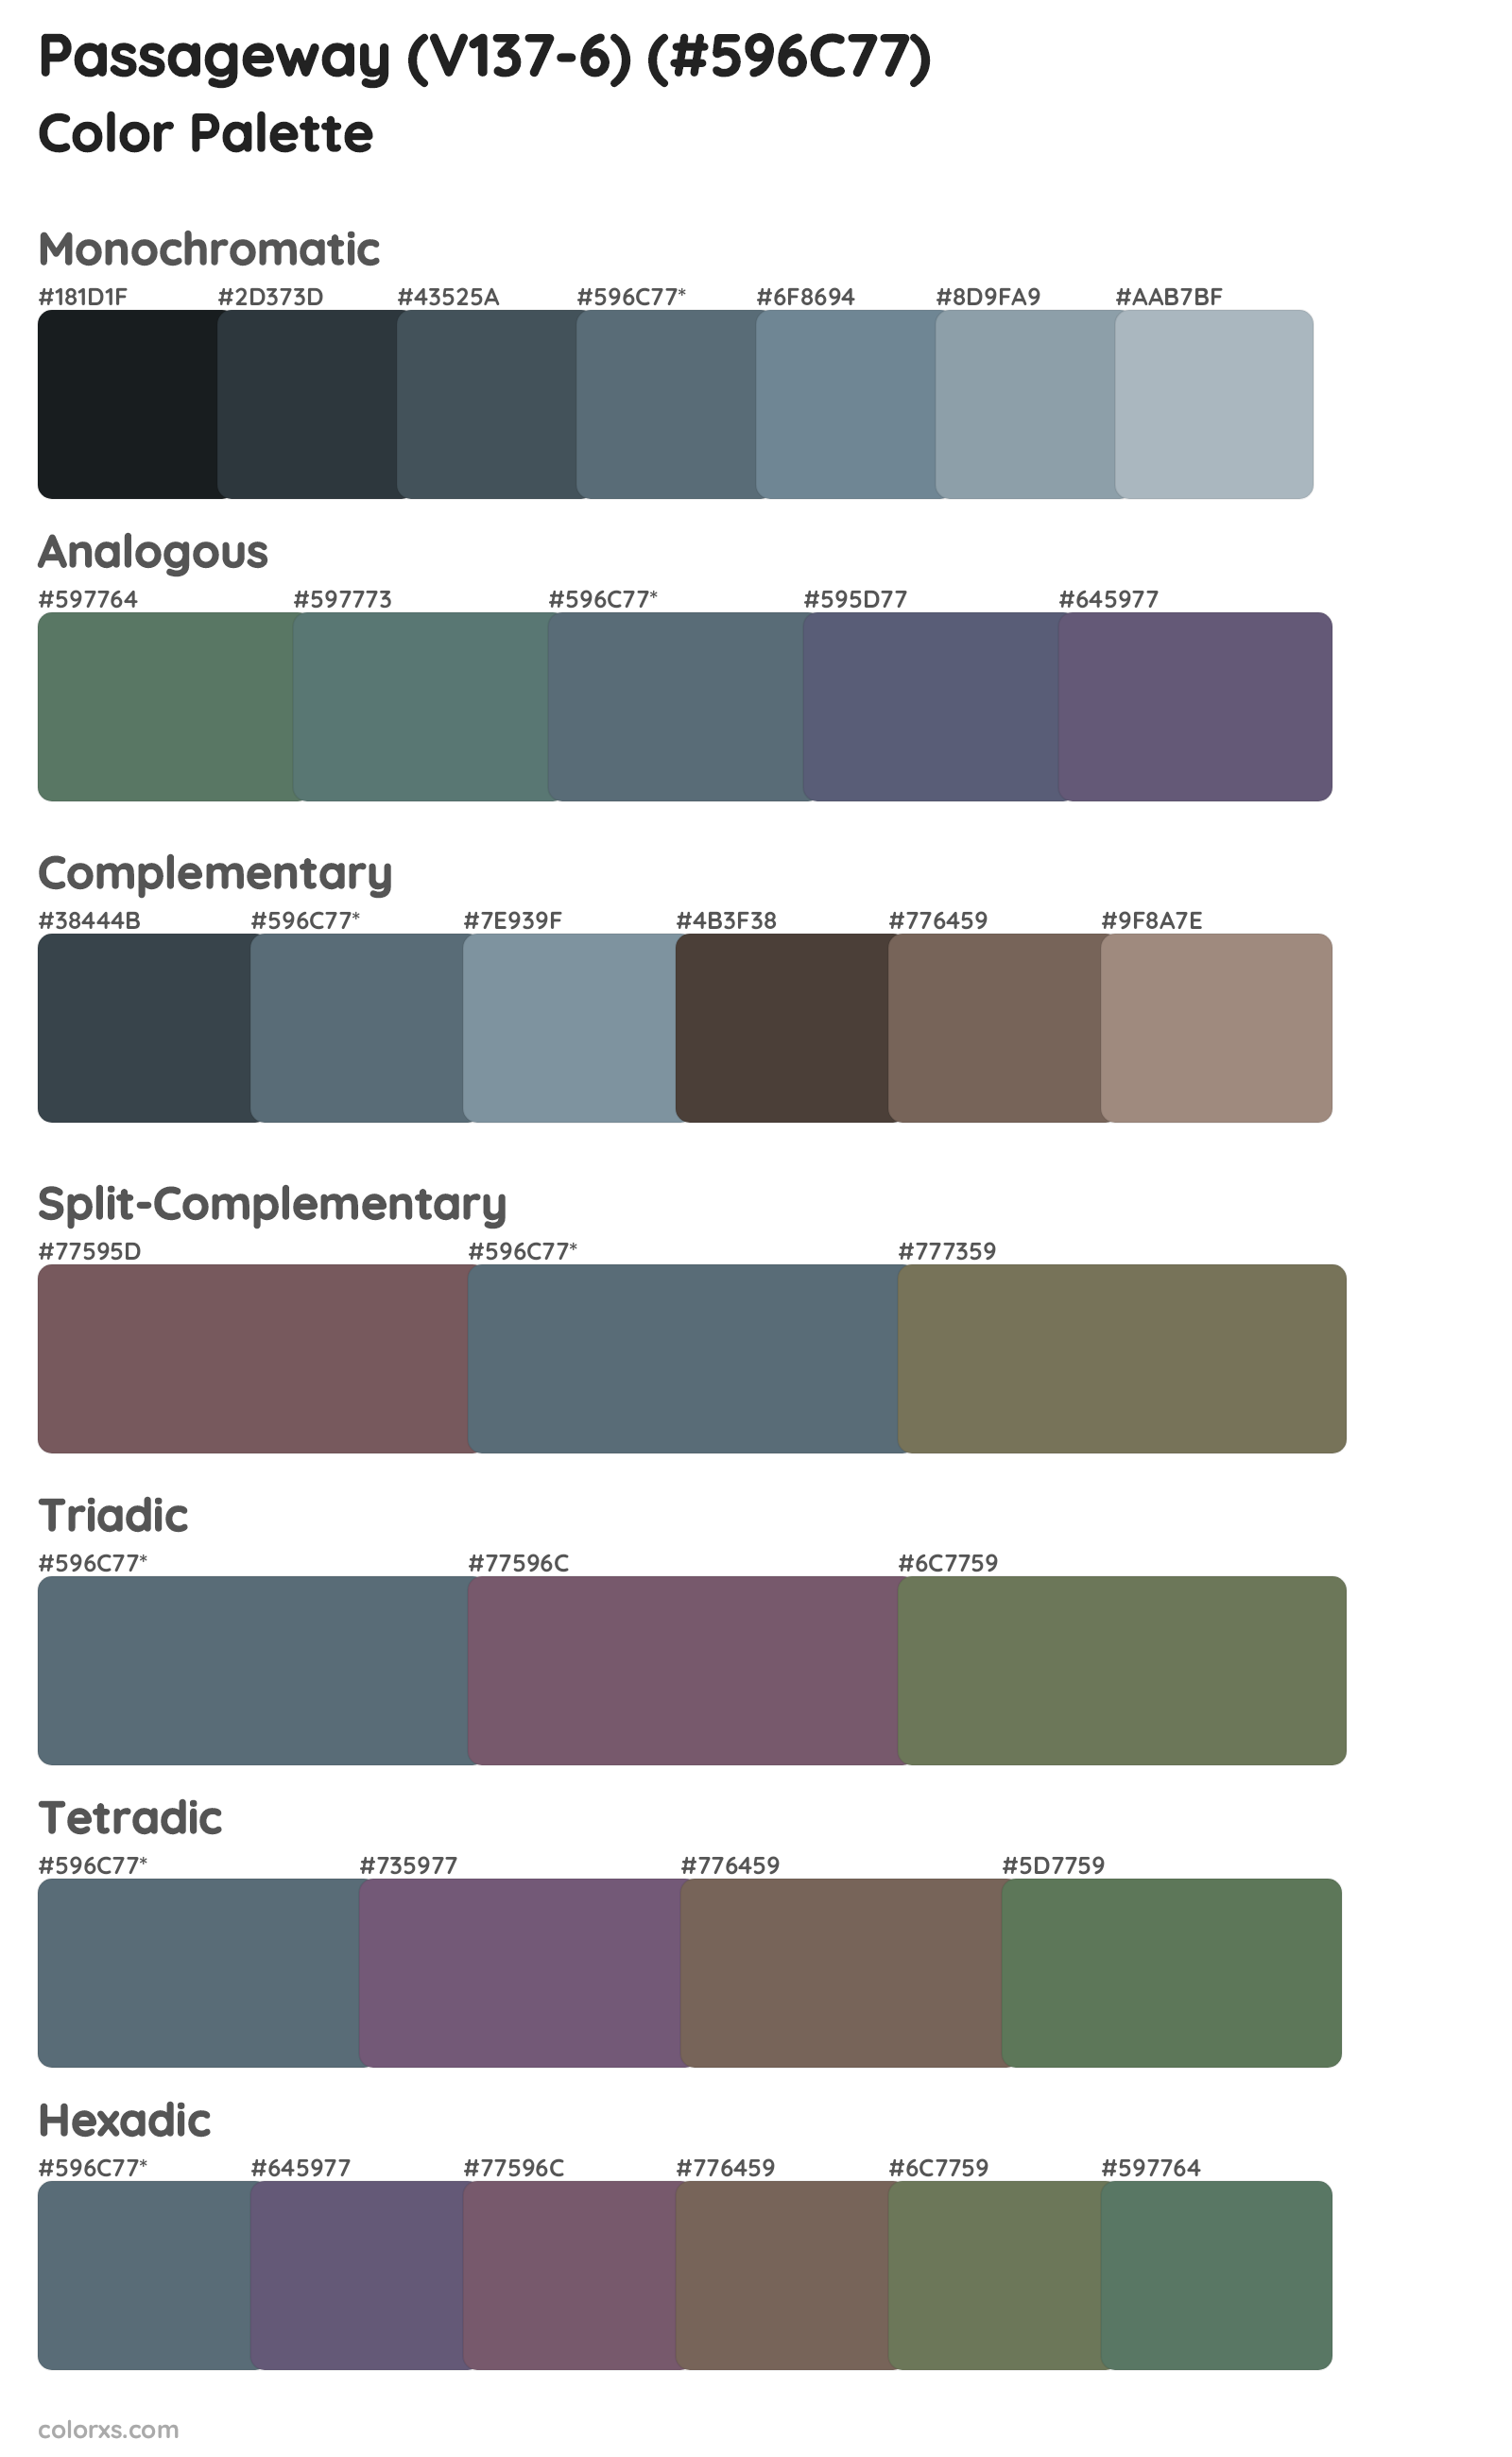 Passageway (V137-6) Color Scheme Palettes